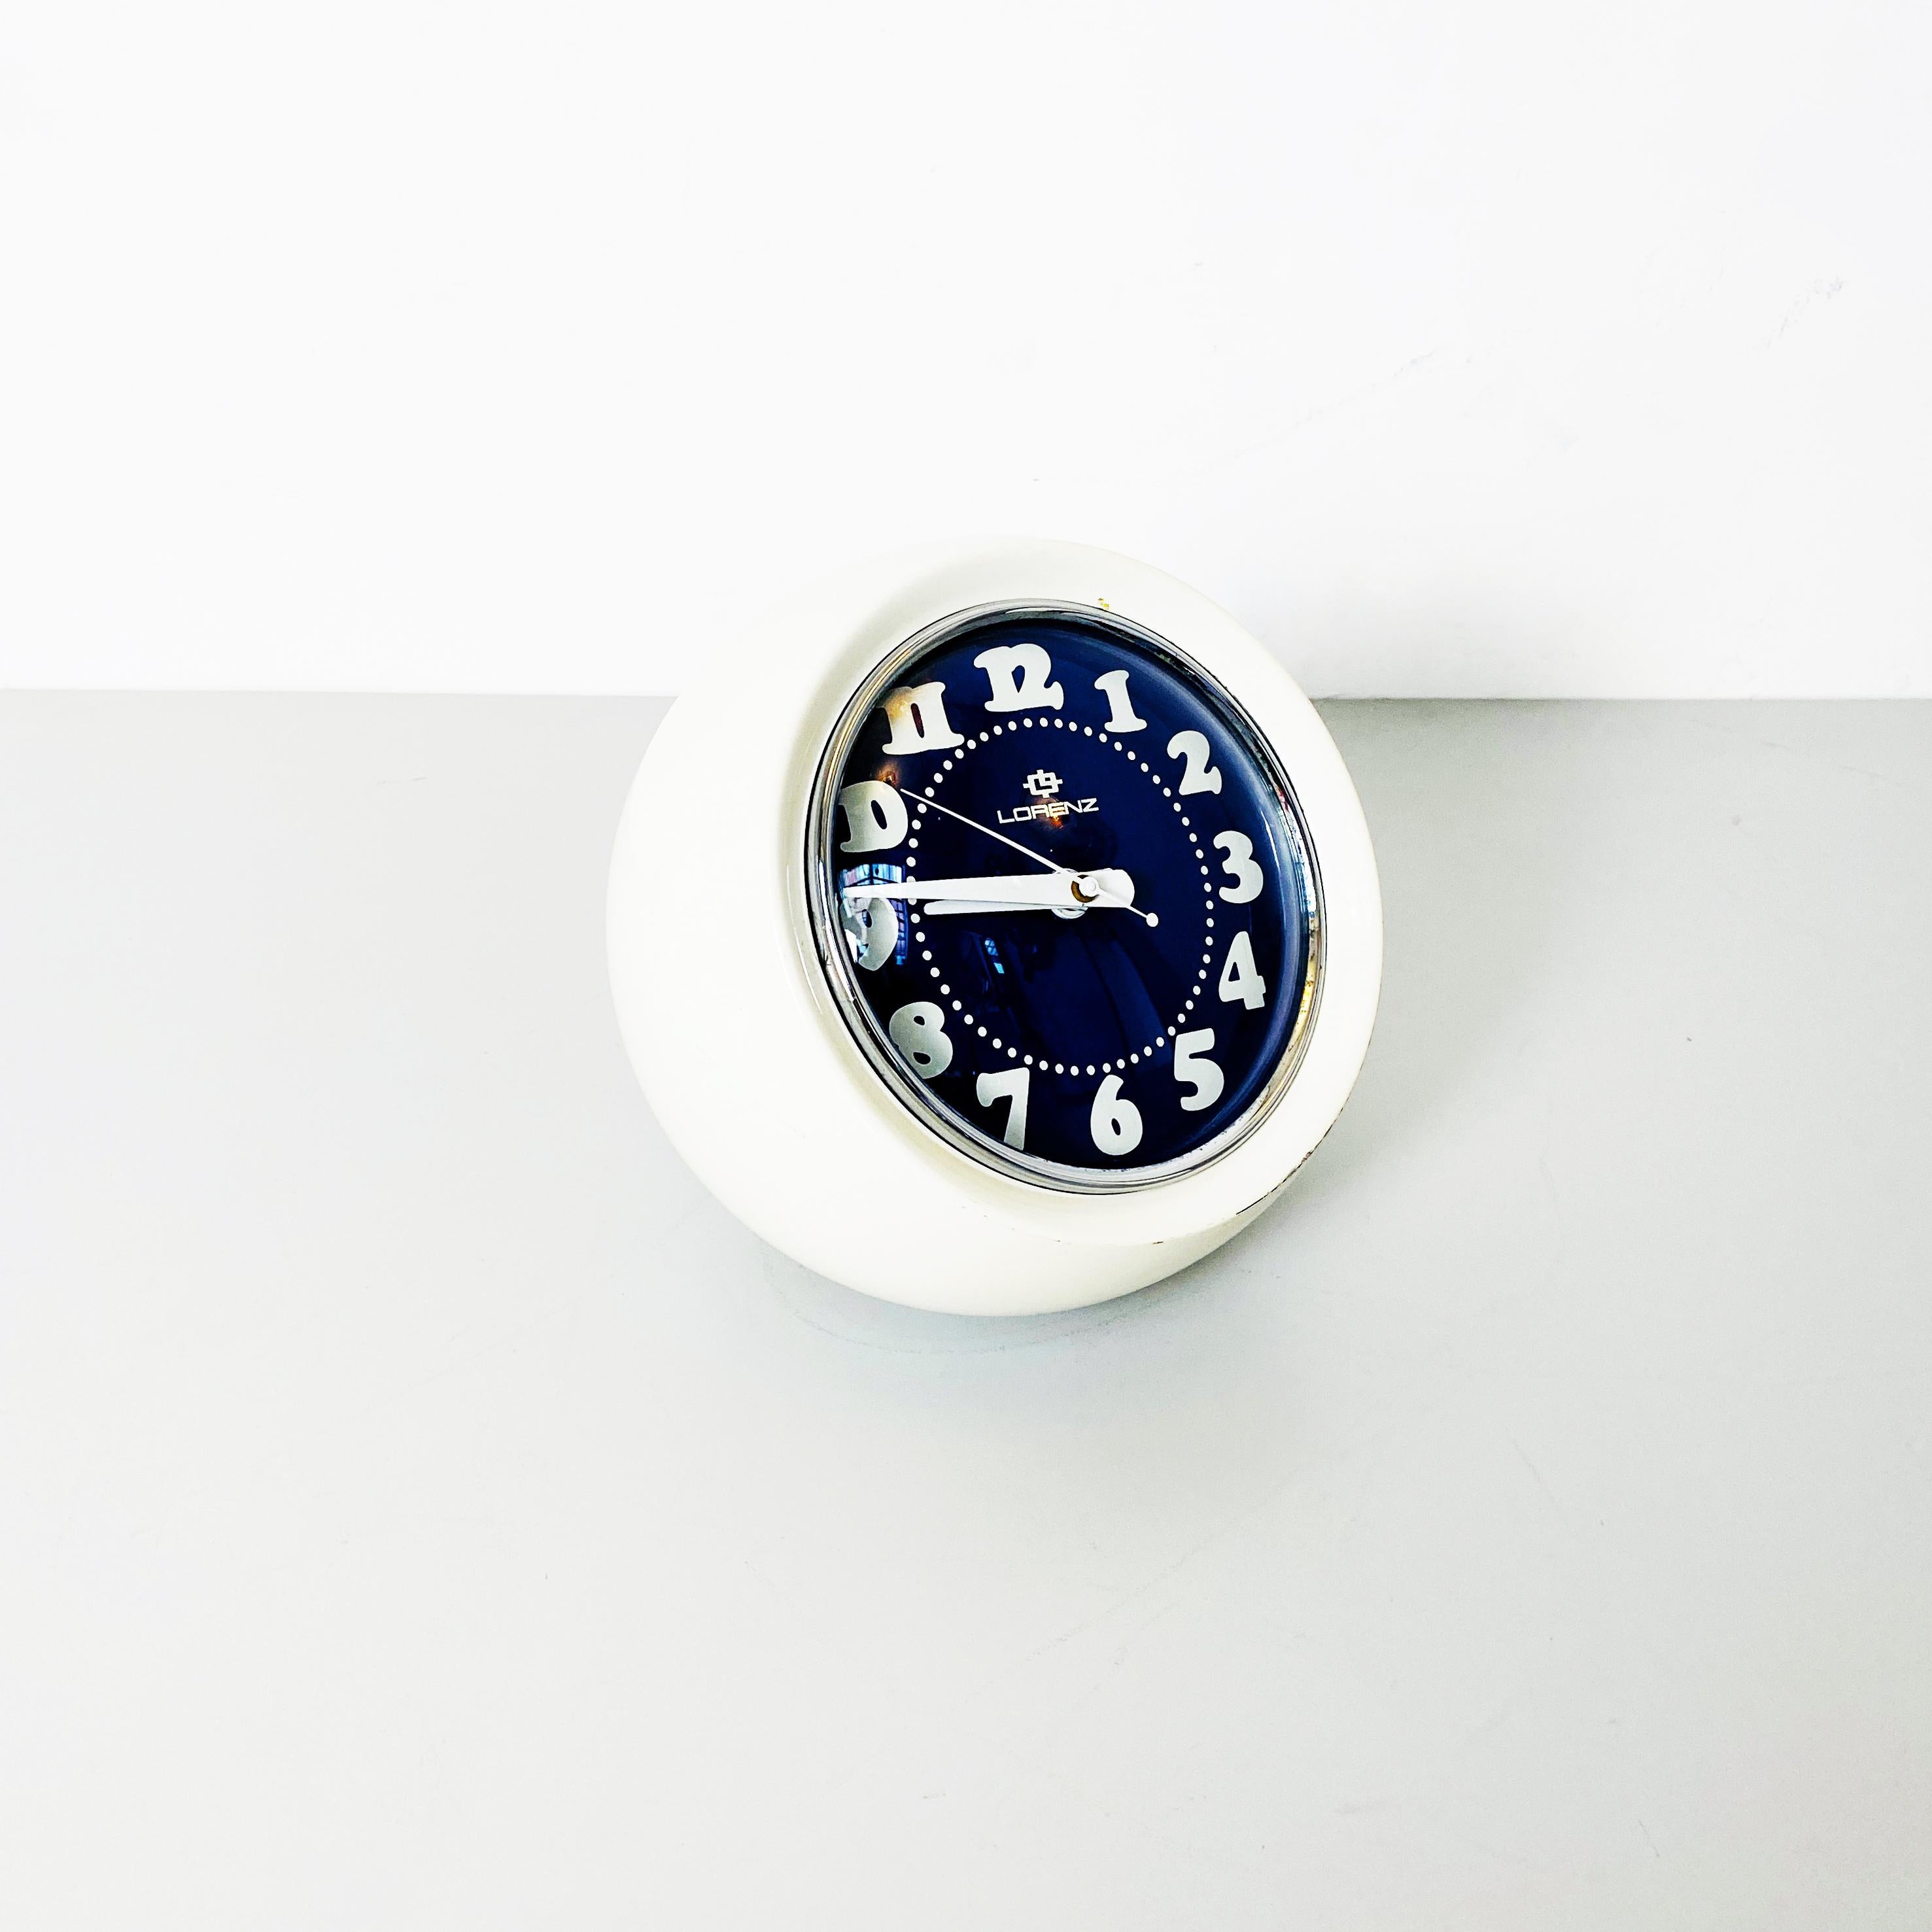 Horloge de table italienne de l'ère spatiale en plastique blanc sphérique modèle Boule de Lorenz, années 1960
Fantastique horloge de table modèle Boule, la structure est de forme sphérique en métal et plastique. 
Le cadran est amovible et positionné